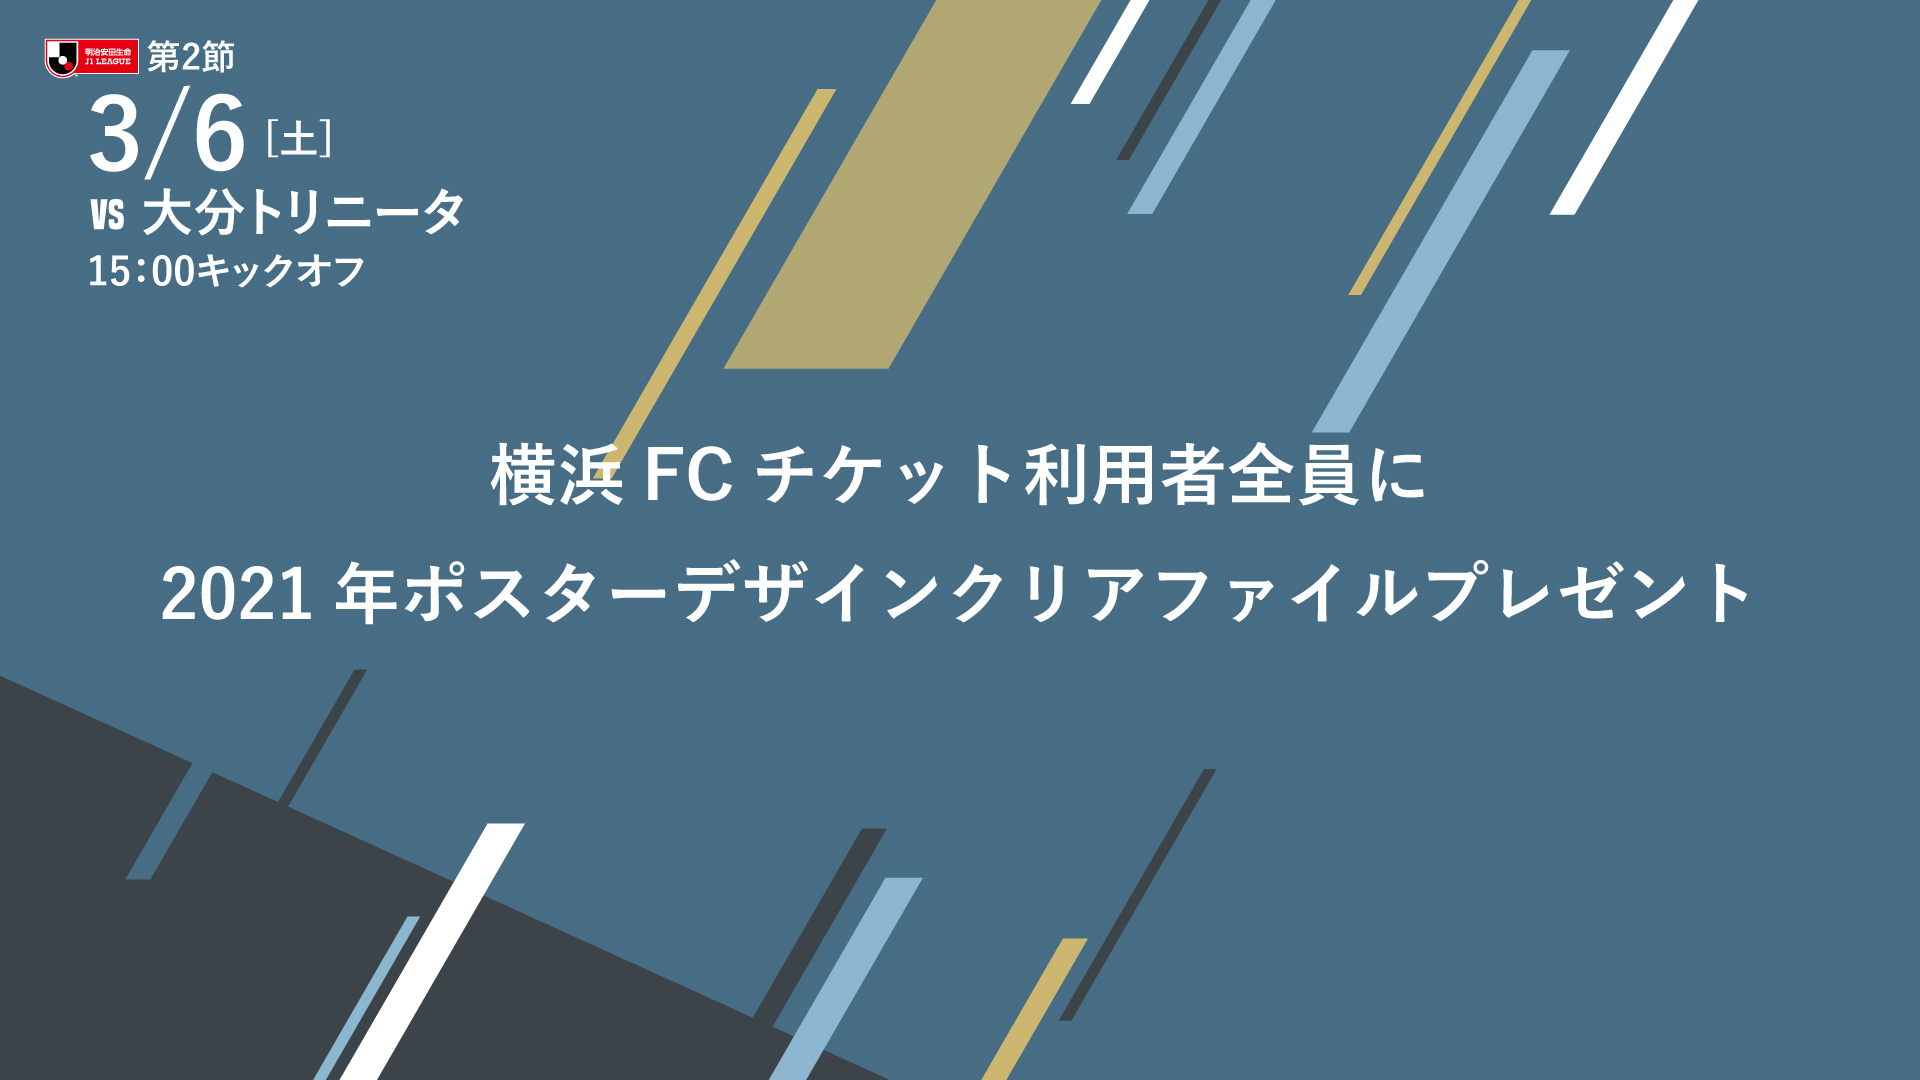 横浜fcチケットご利用者全員に21ポスターデザインクリアファイルプレゼント 横浜fcオフィシャルウェブサイト